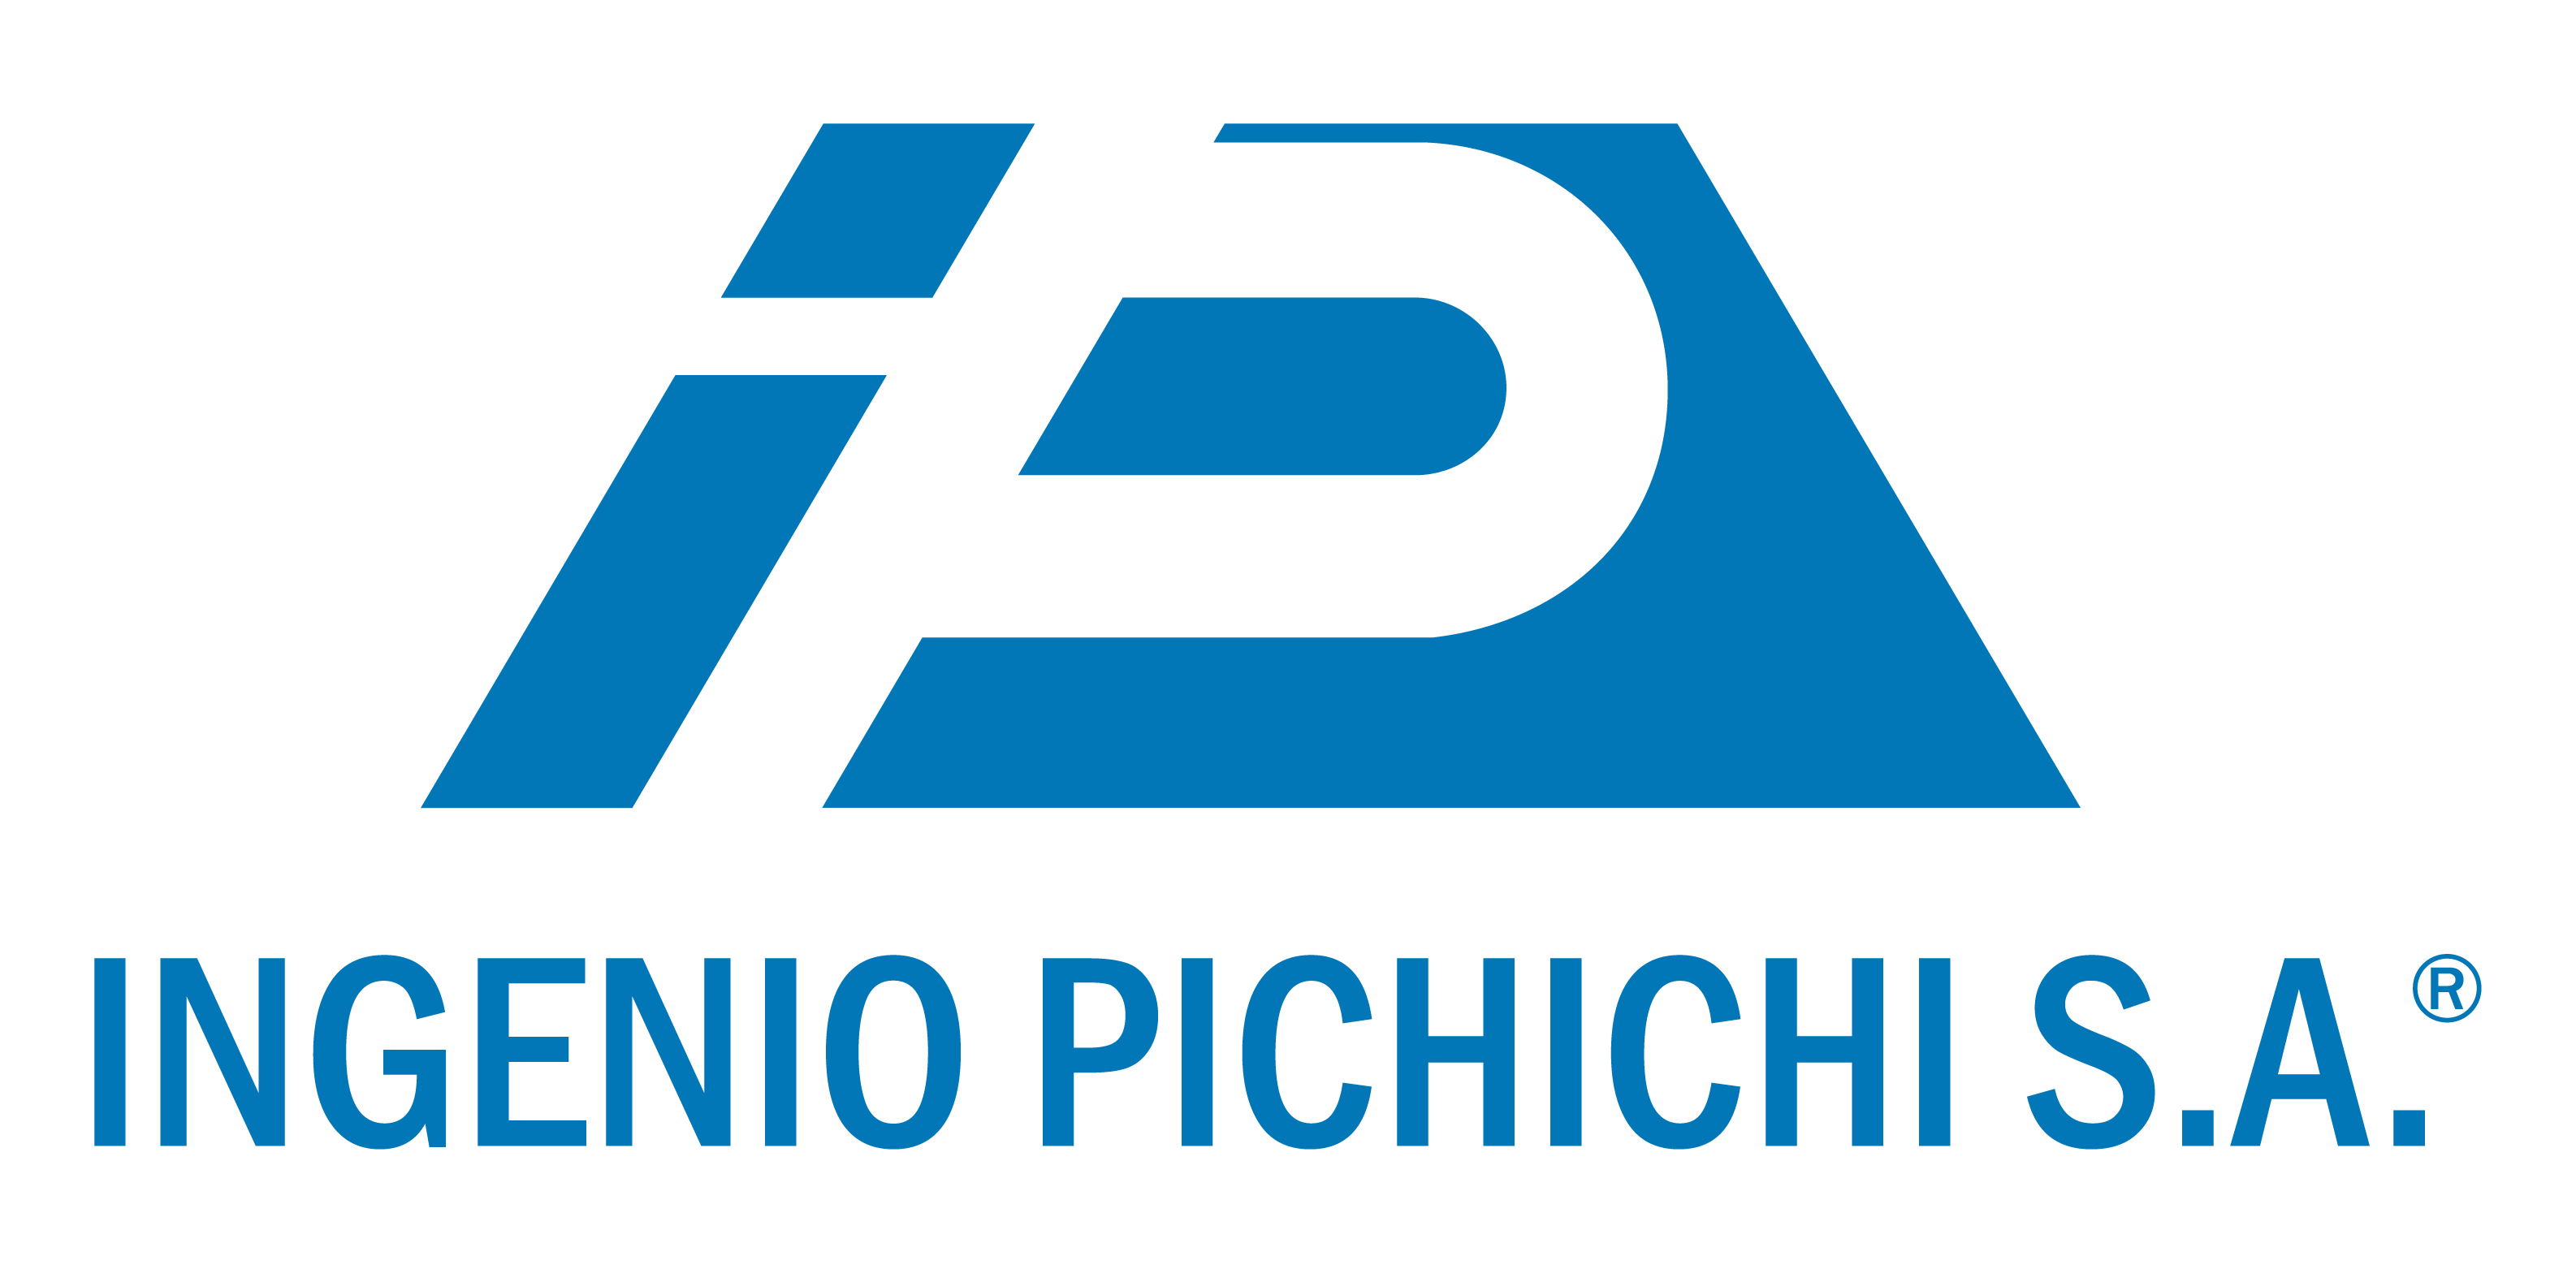 Logo Ingenio Pichichí